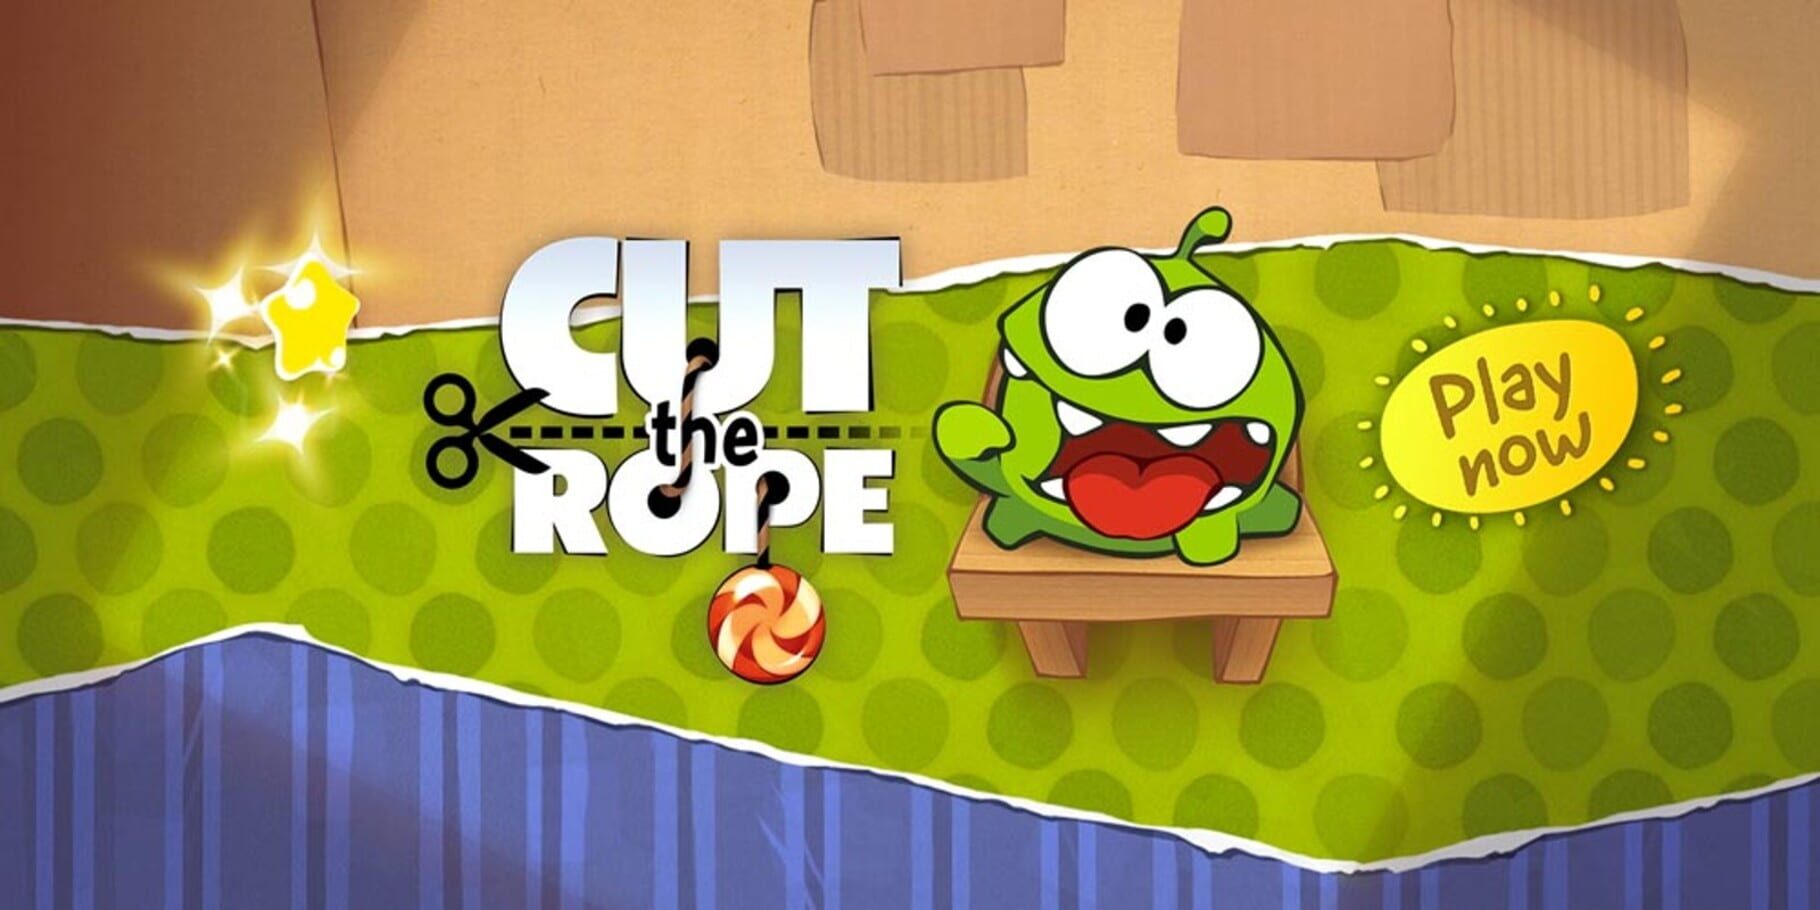 Arte - Cut the Rope